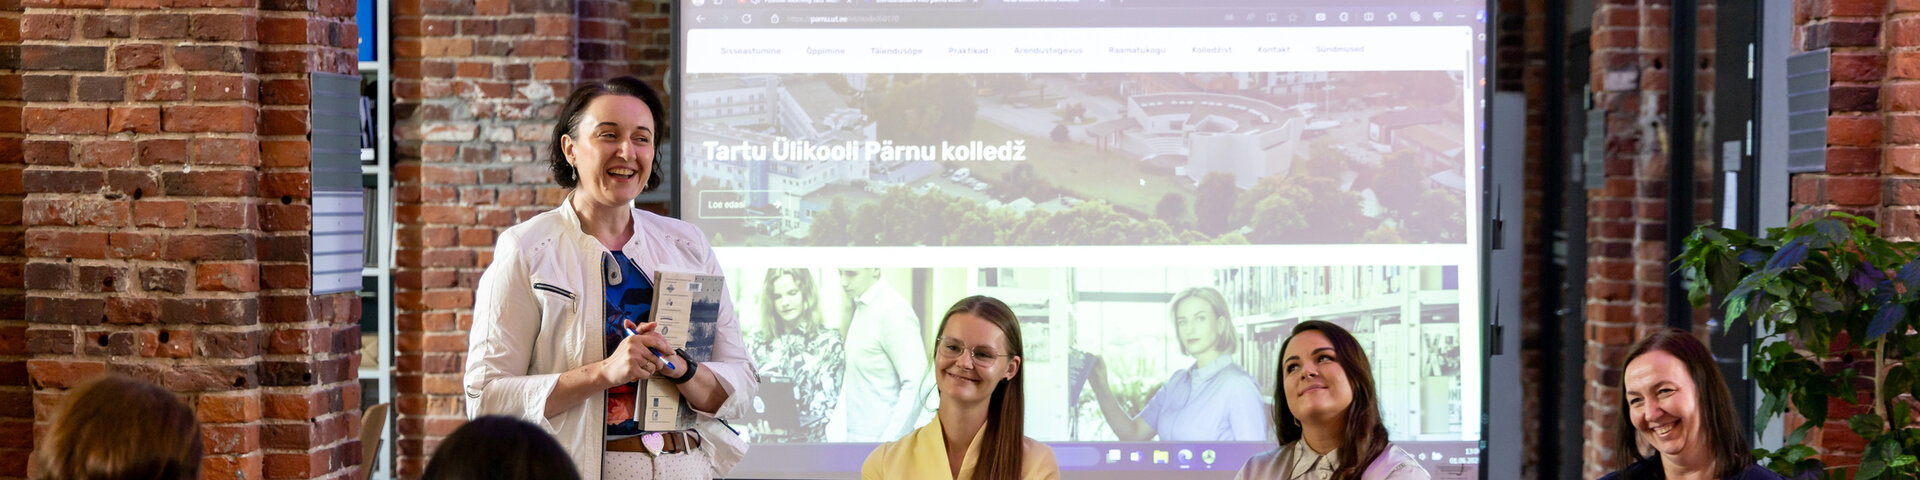 Rahvusvahelise teenusedisainipäeva tähistamine Pärnu kolledžis